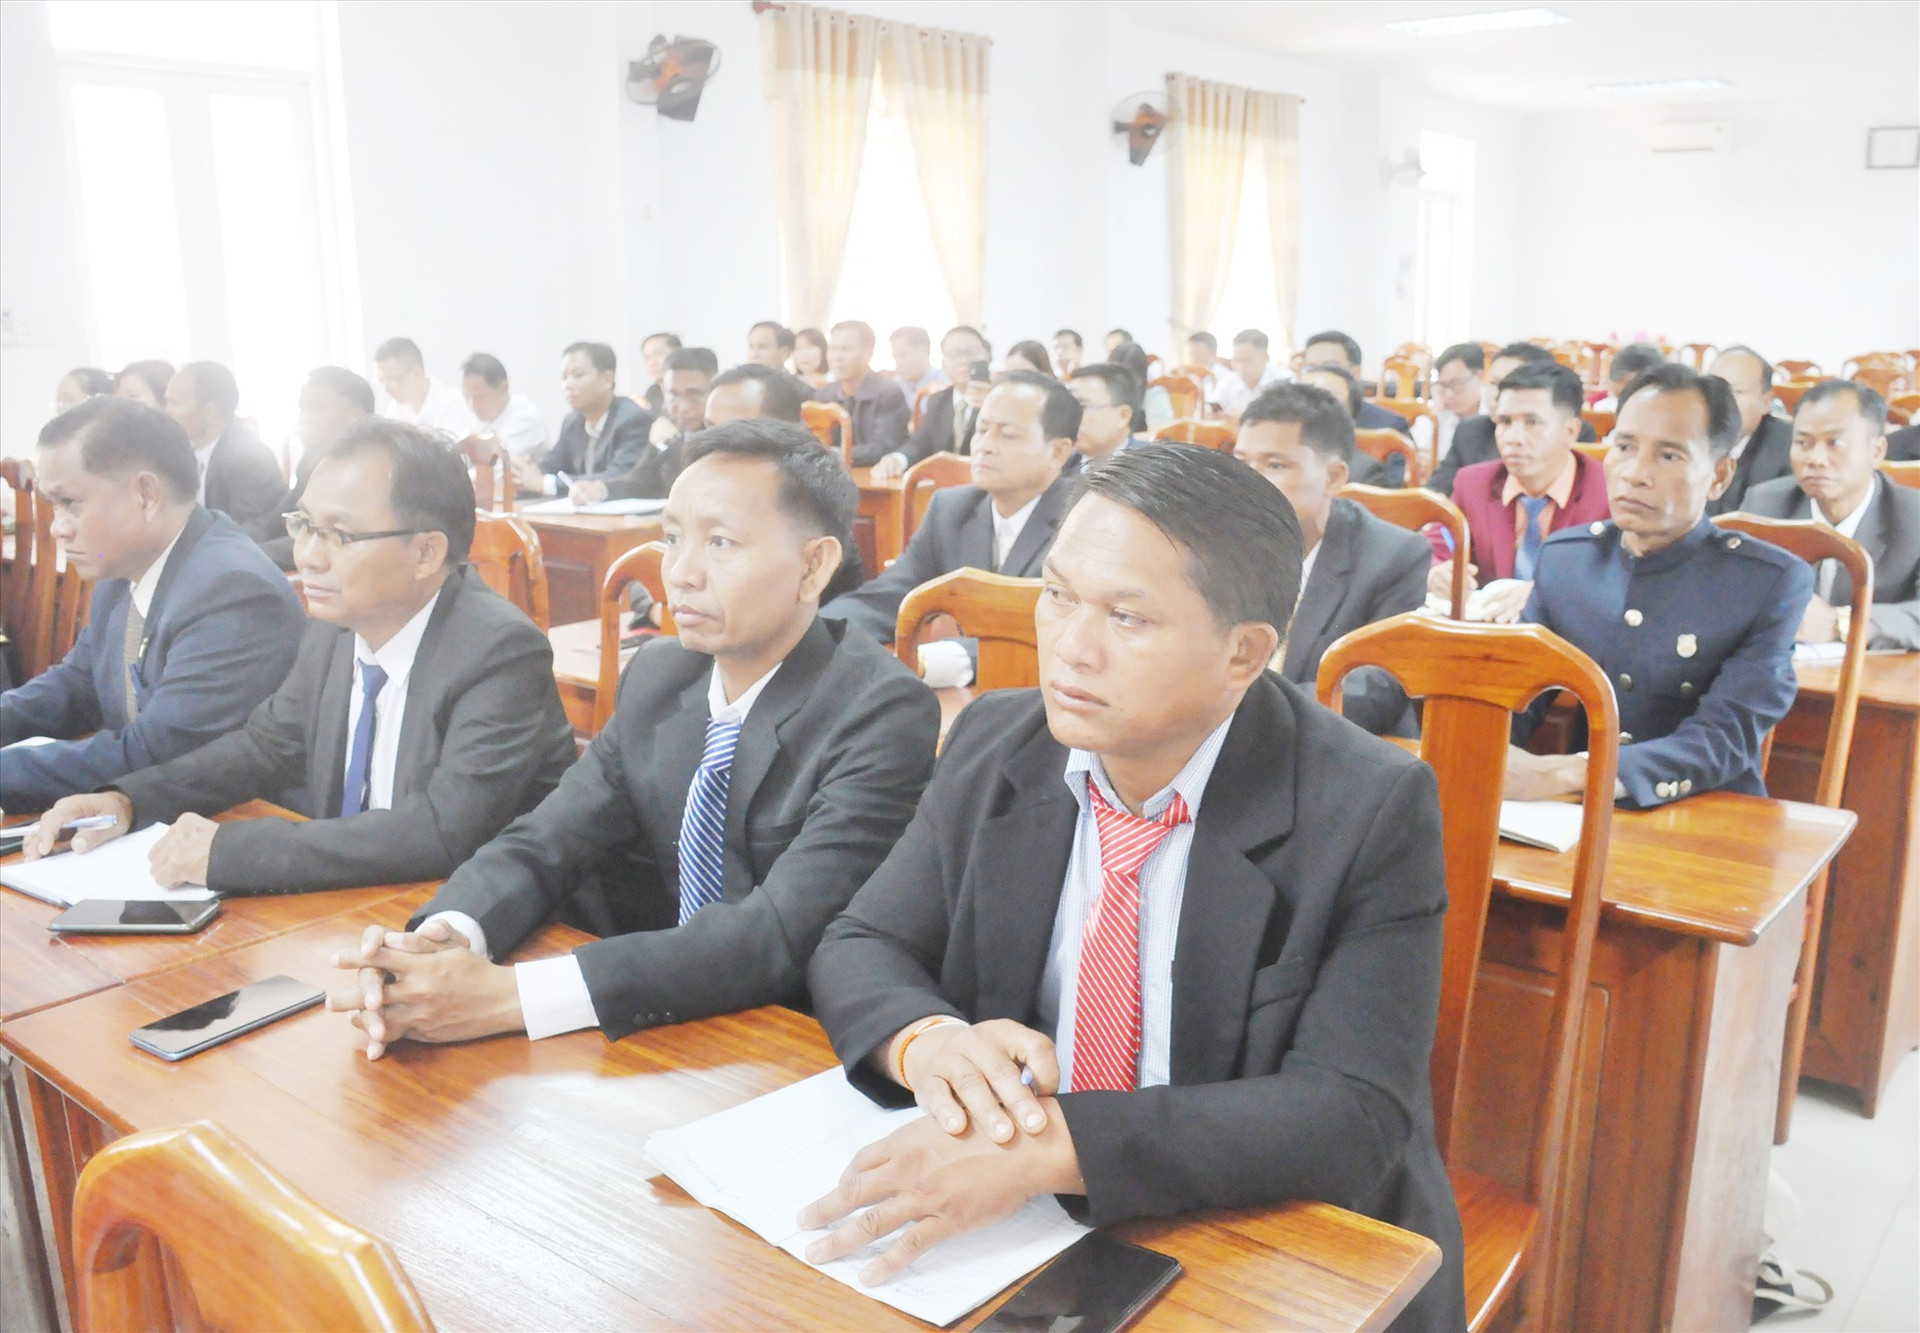 Cán bộ lãnh đạo, quản lý của tỉnh Sê Kông tham gia lớp đào tạo trung cấp lý luận chính trị hệ tập trung năm 2023 (khóa 14, theo chương trình của Học viện Chính trị quốc gia Hồ Chí Minh) tại Trường Chính trị Quảng Nam. Ảnh: N.Đ